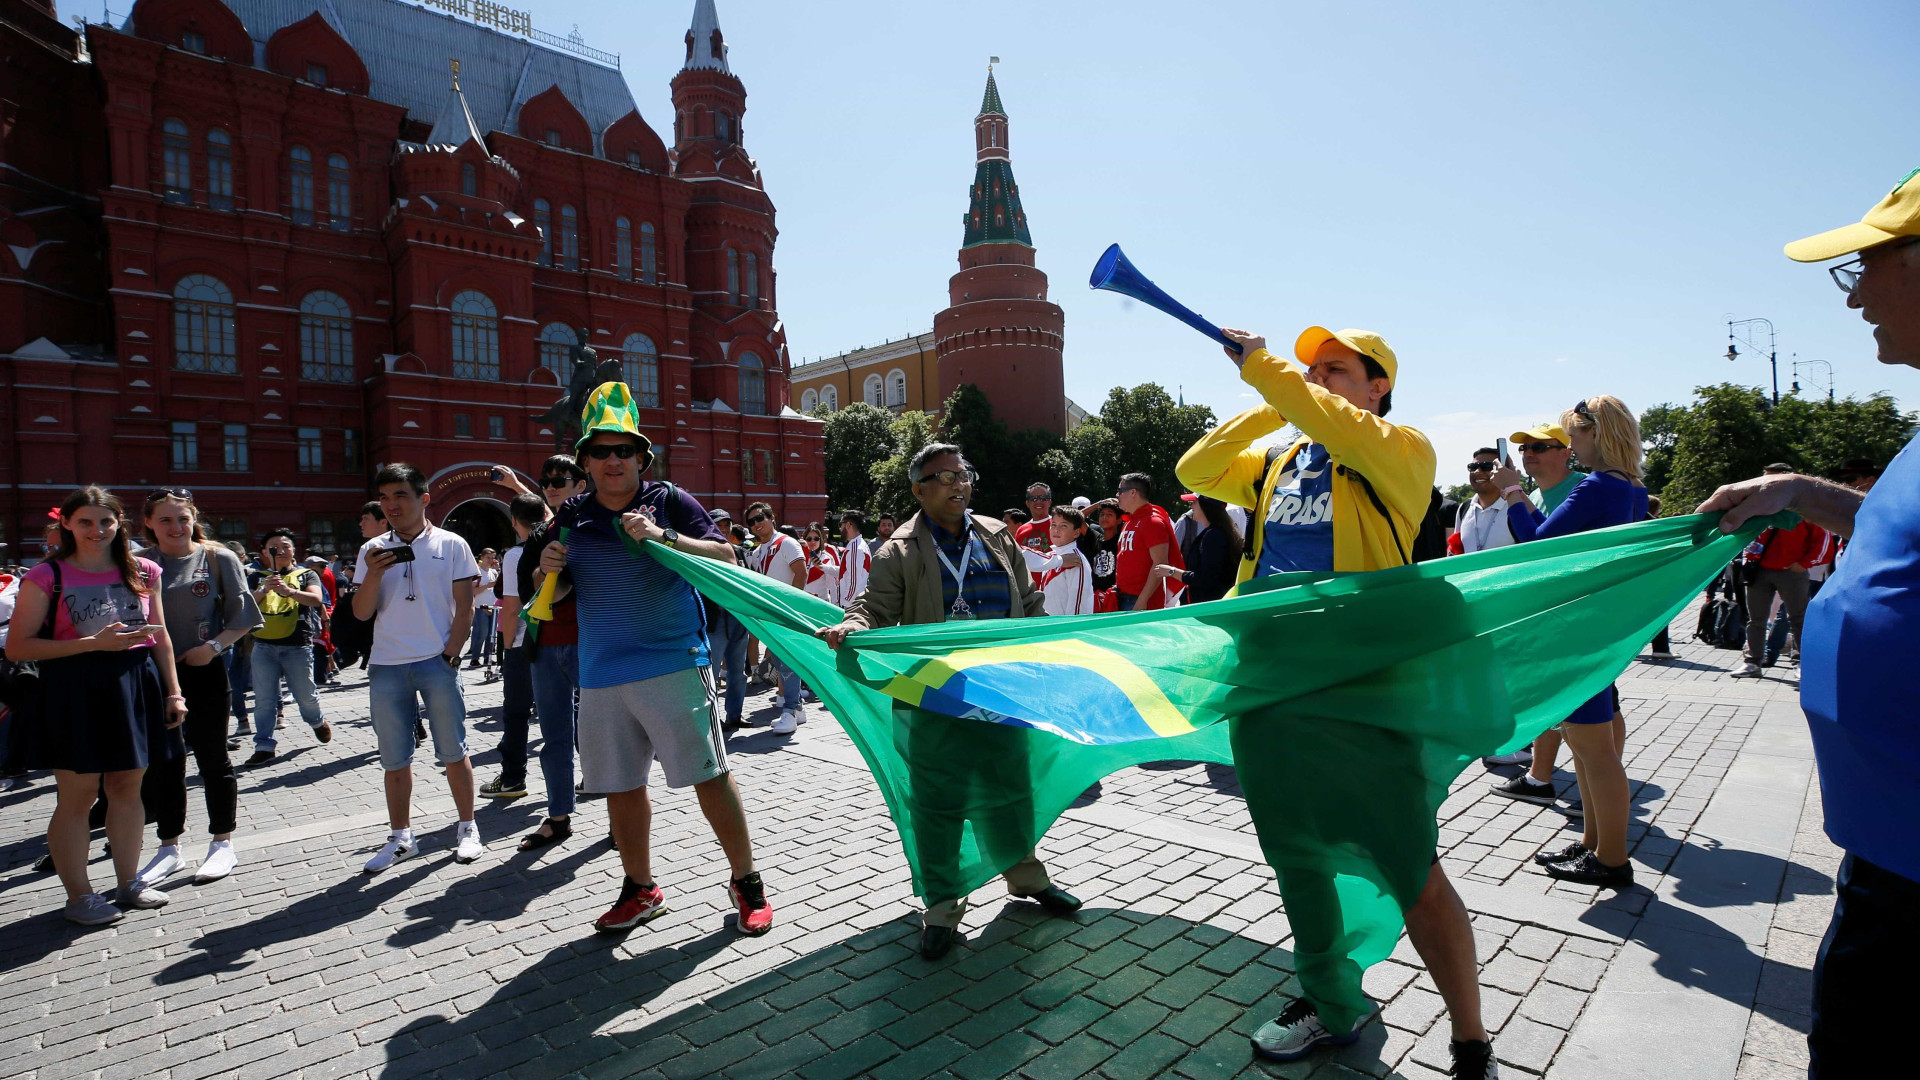 Estado Islâmico ameaça cometer atentado na Copa da Rússia